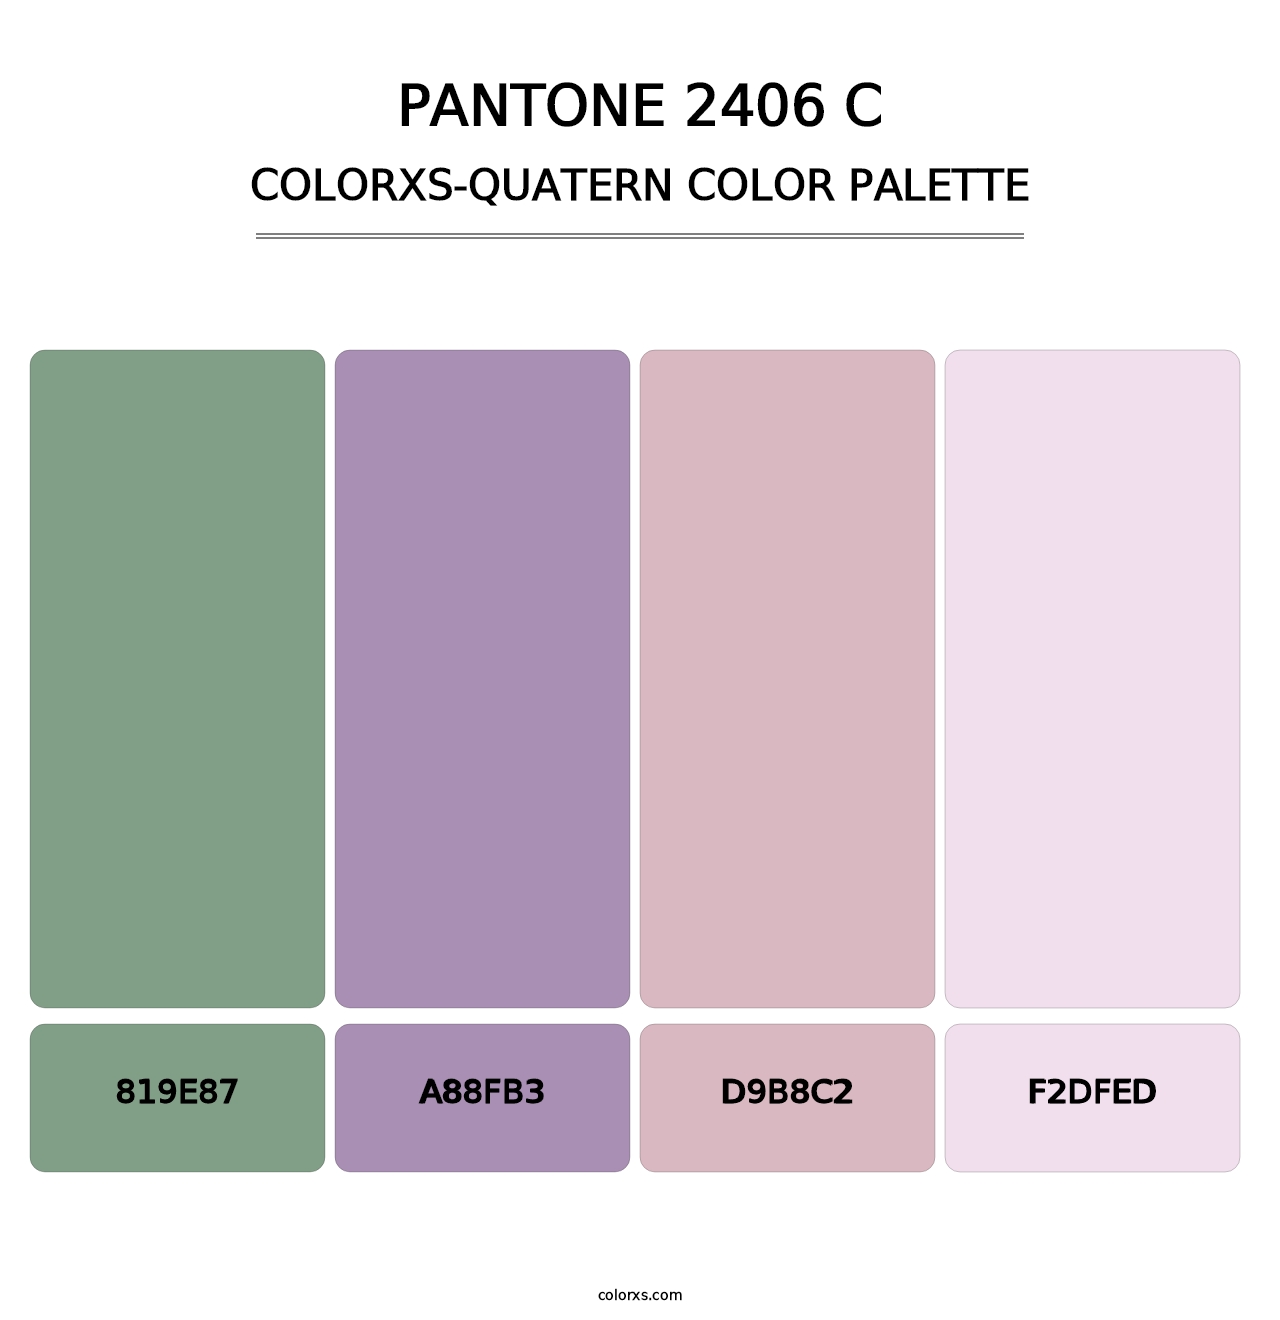 PANTONE 2406 C - Colorxs Quatern Palette